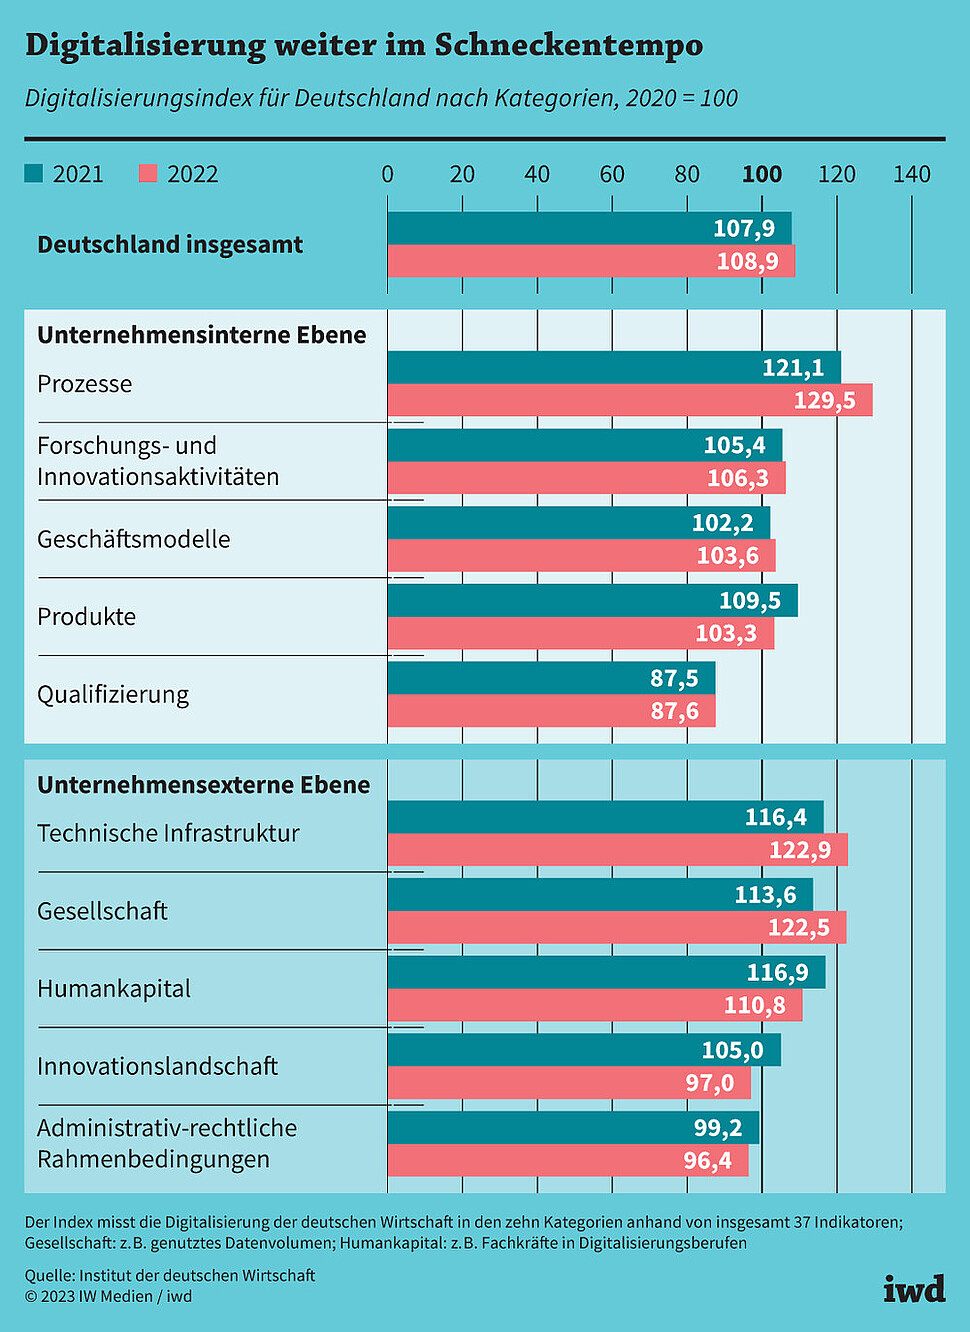 Digitalisierungsindex für Deutschland nach Kategorien, 2020=100